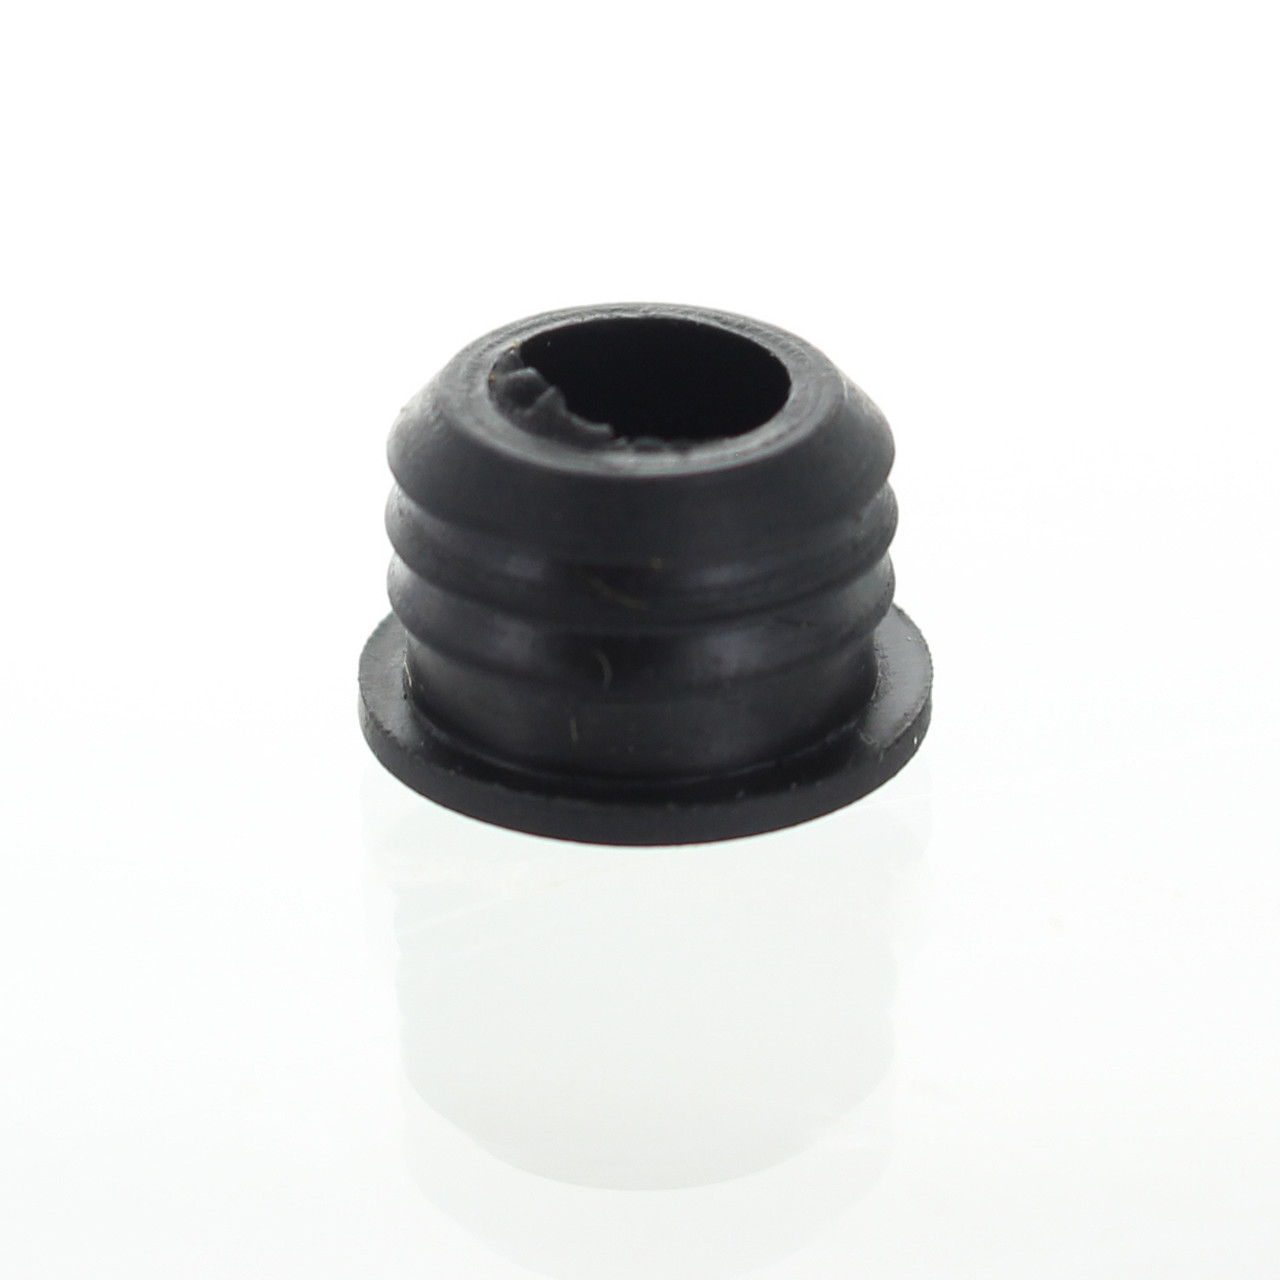 Sea-Doo/Ski-Doo/Can-Am New OEM Black Bumper Plug Cap, 275500241